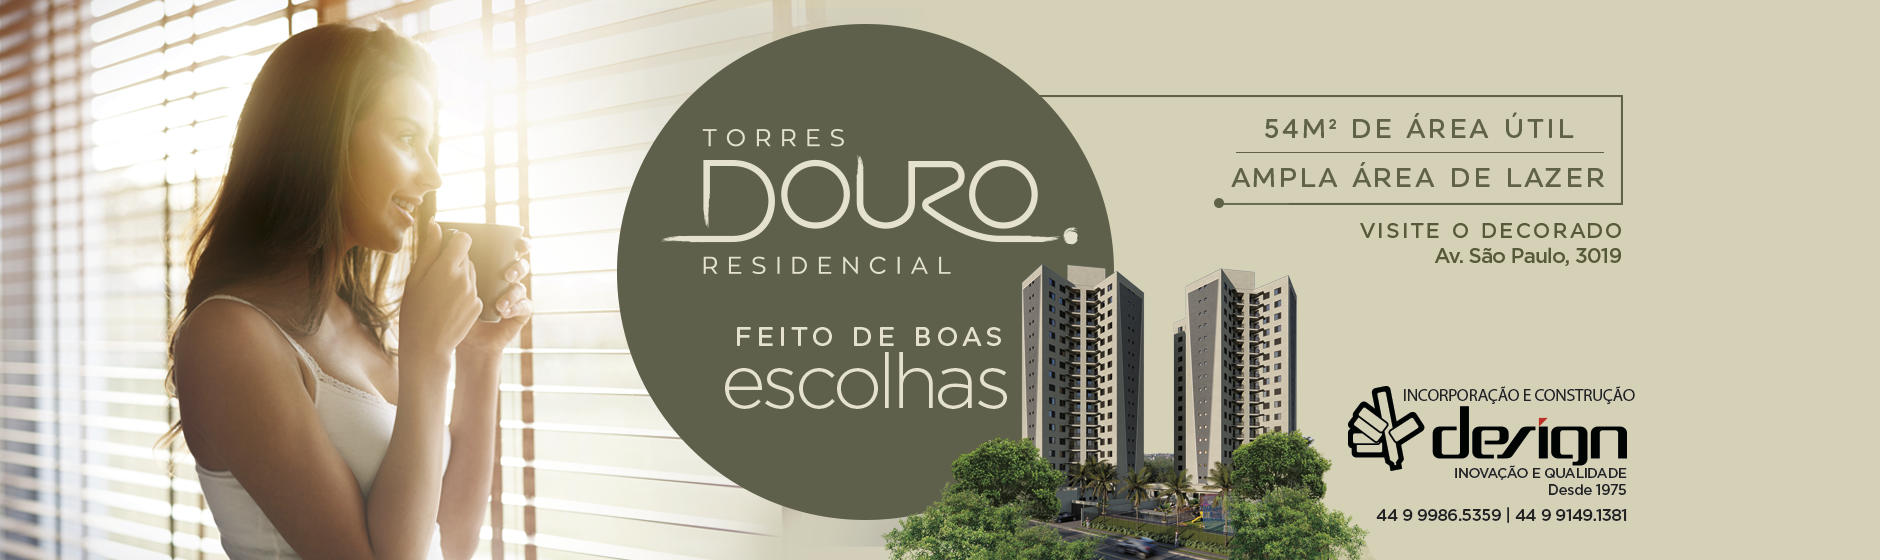 TORRES DOURO RESIDENCIAL